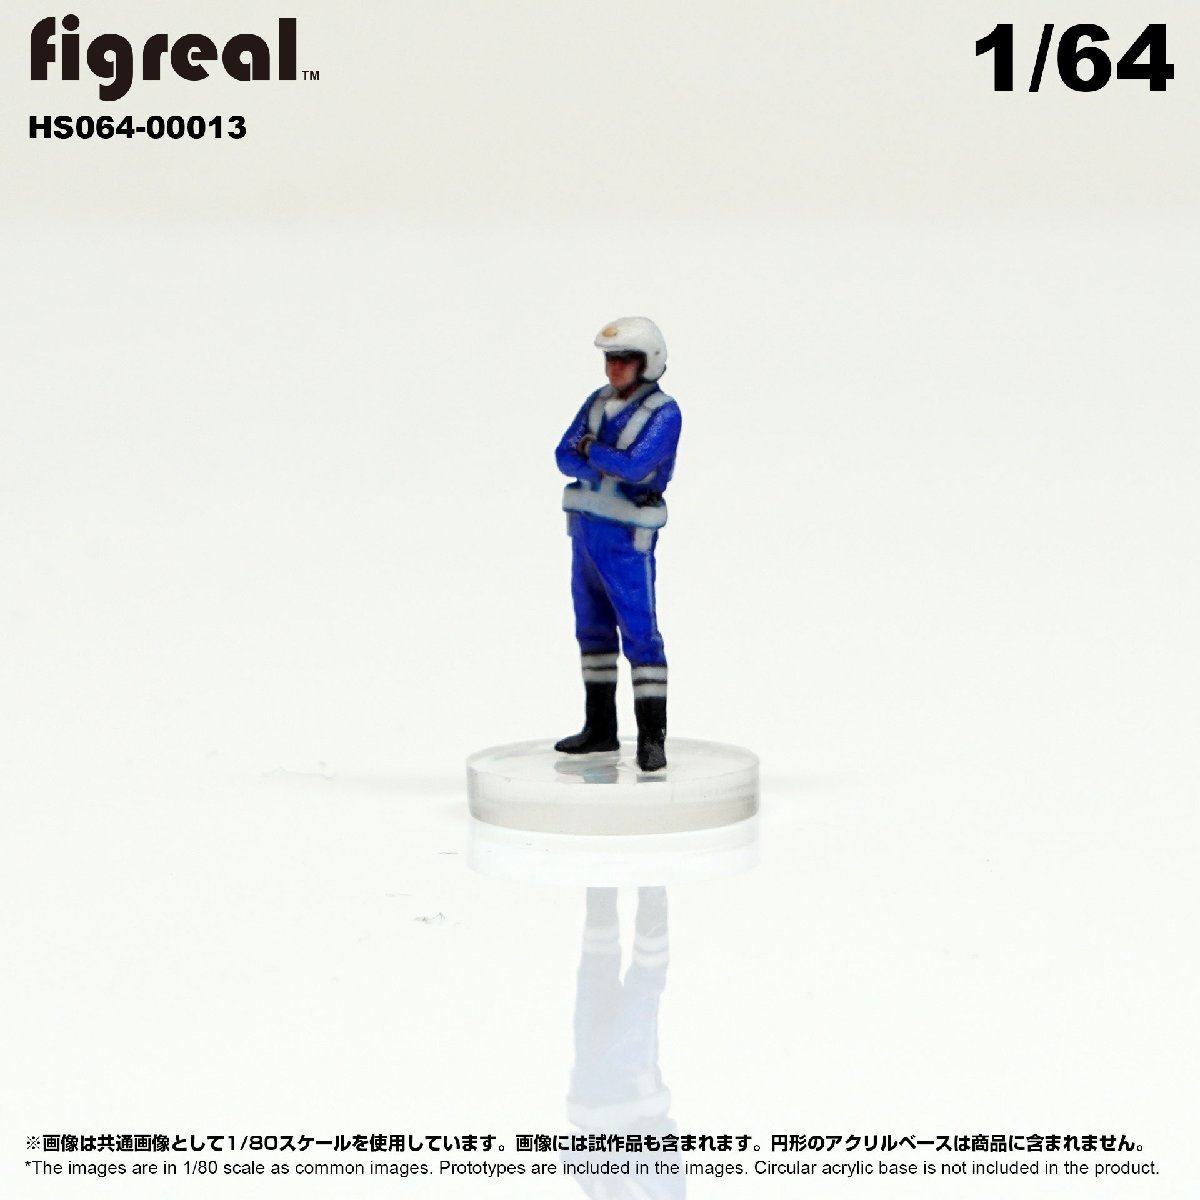 HS064-00013 figreal 日本白バイ隊員 1/64 高精細フィギュア_画像3